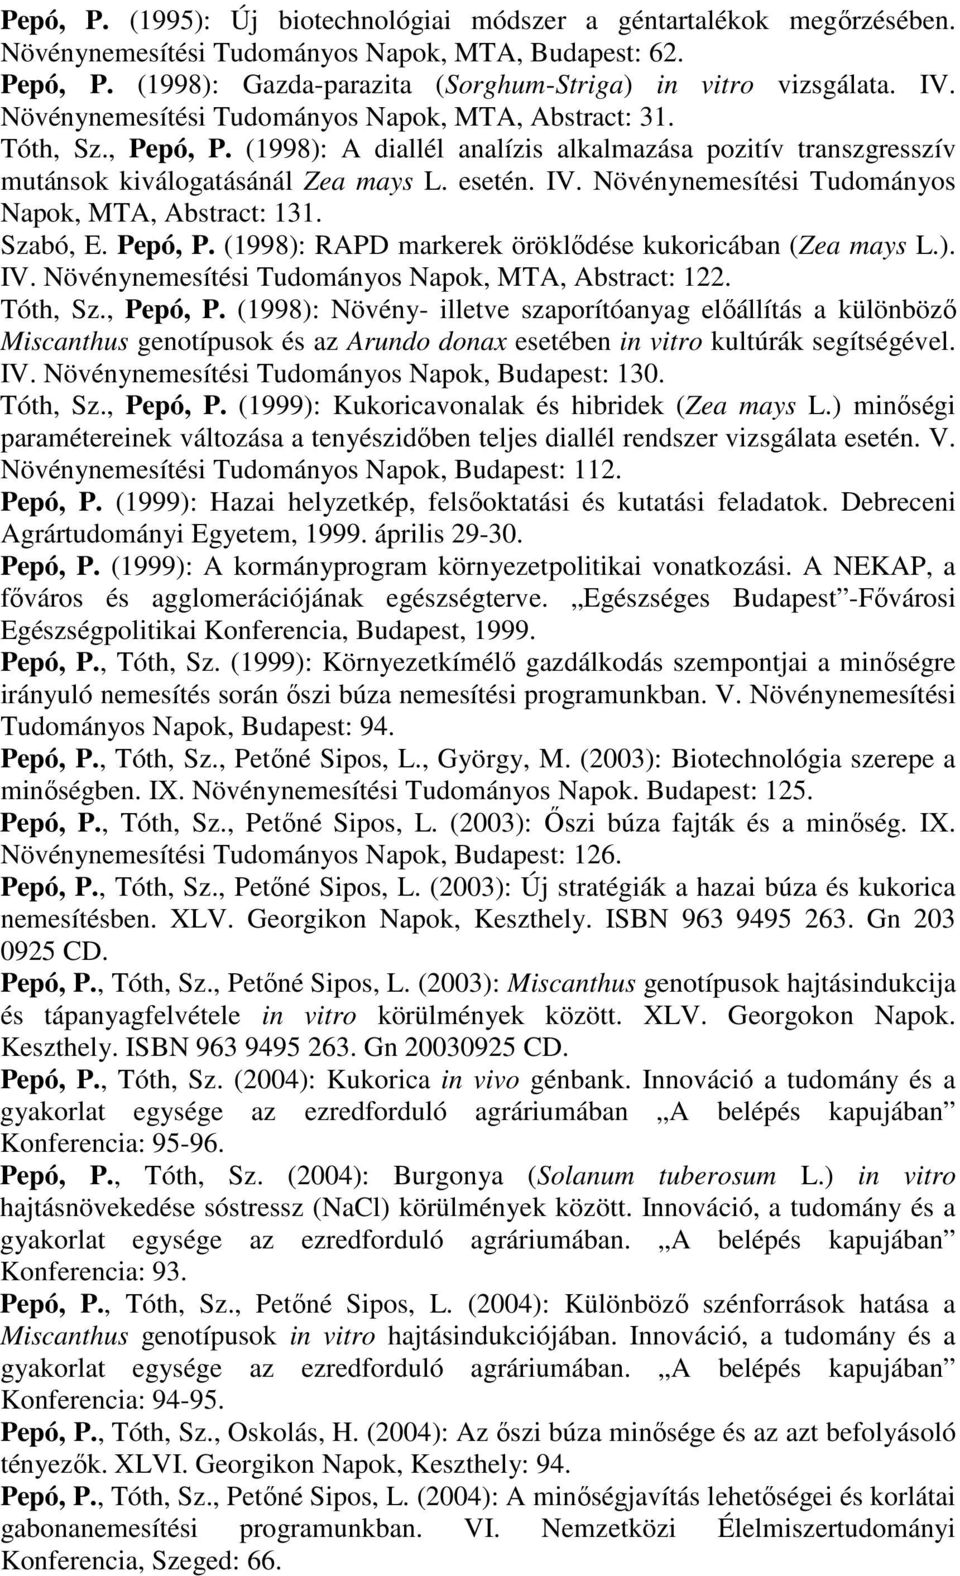 Növénynemesítési Tudományos Napok, MTA, Abstract: 131. Szabó, E. Pepó, P. (1998): RAPD markerek öröklődése kukoricában (Zea mays L.). IV. Növénynemesítési Tudományos Napok, MTA, Abstract: 122.